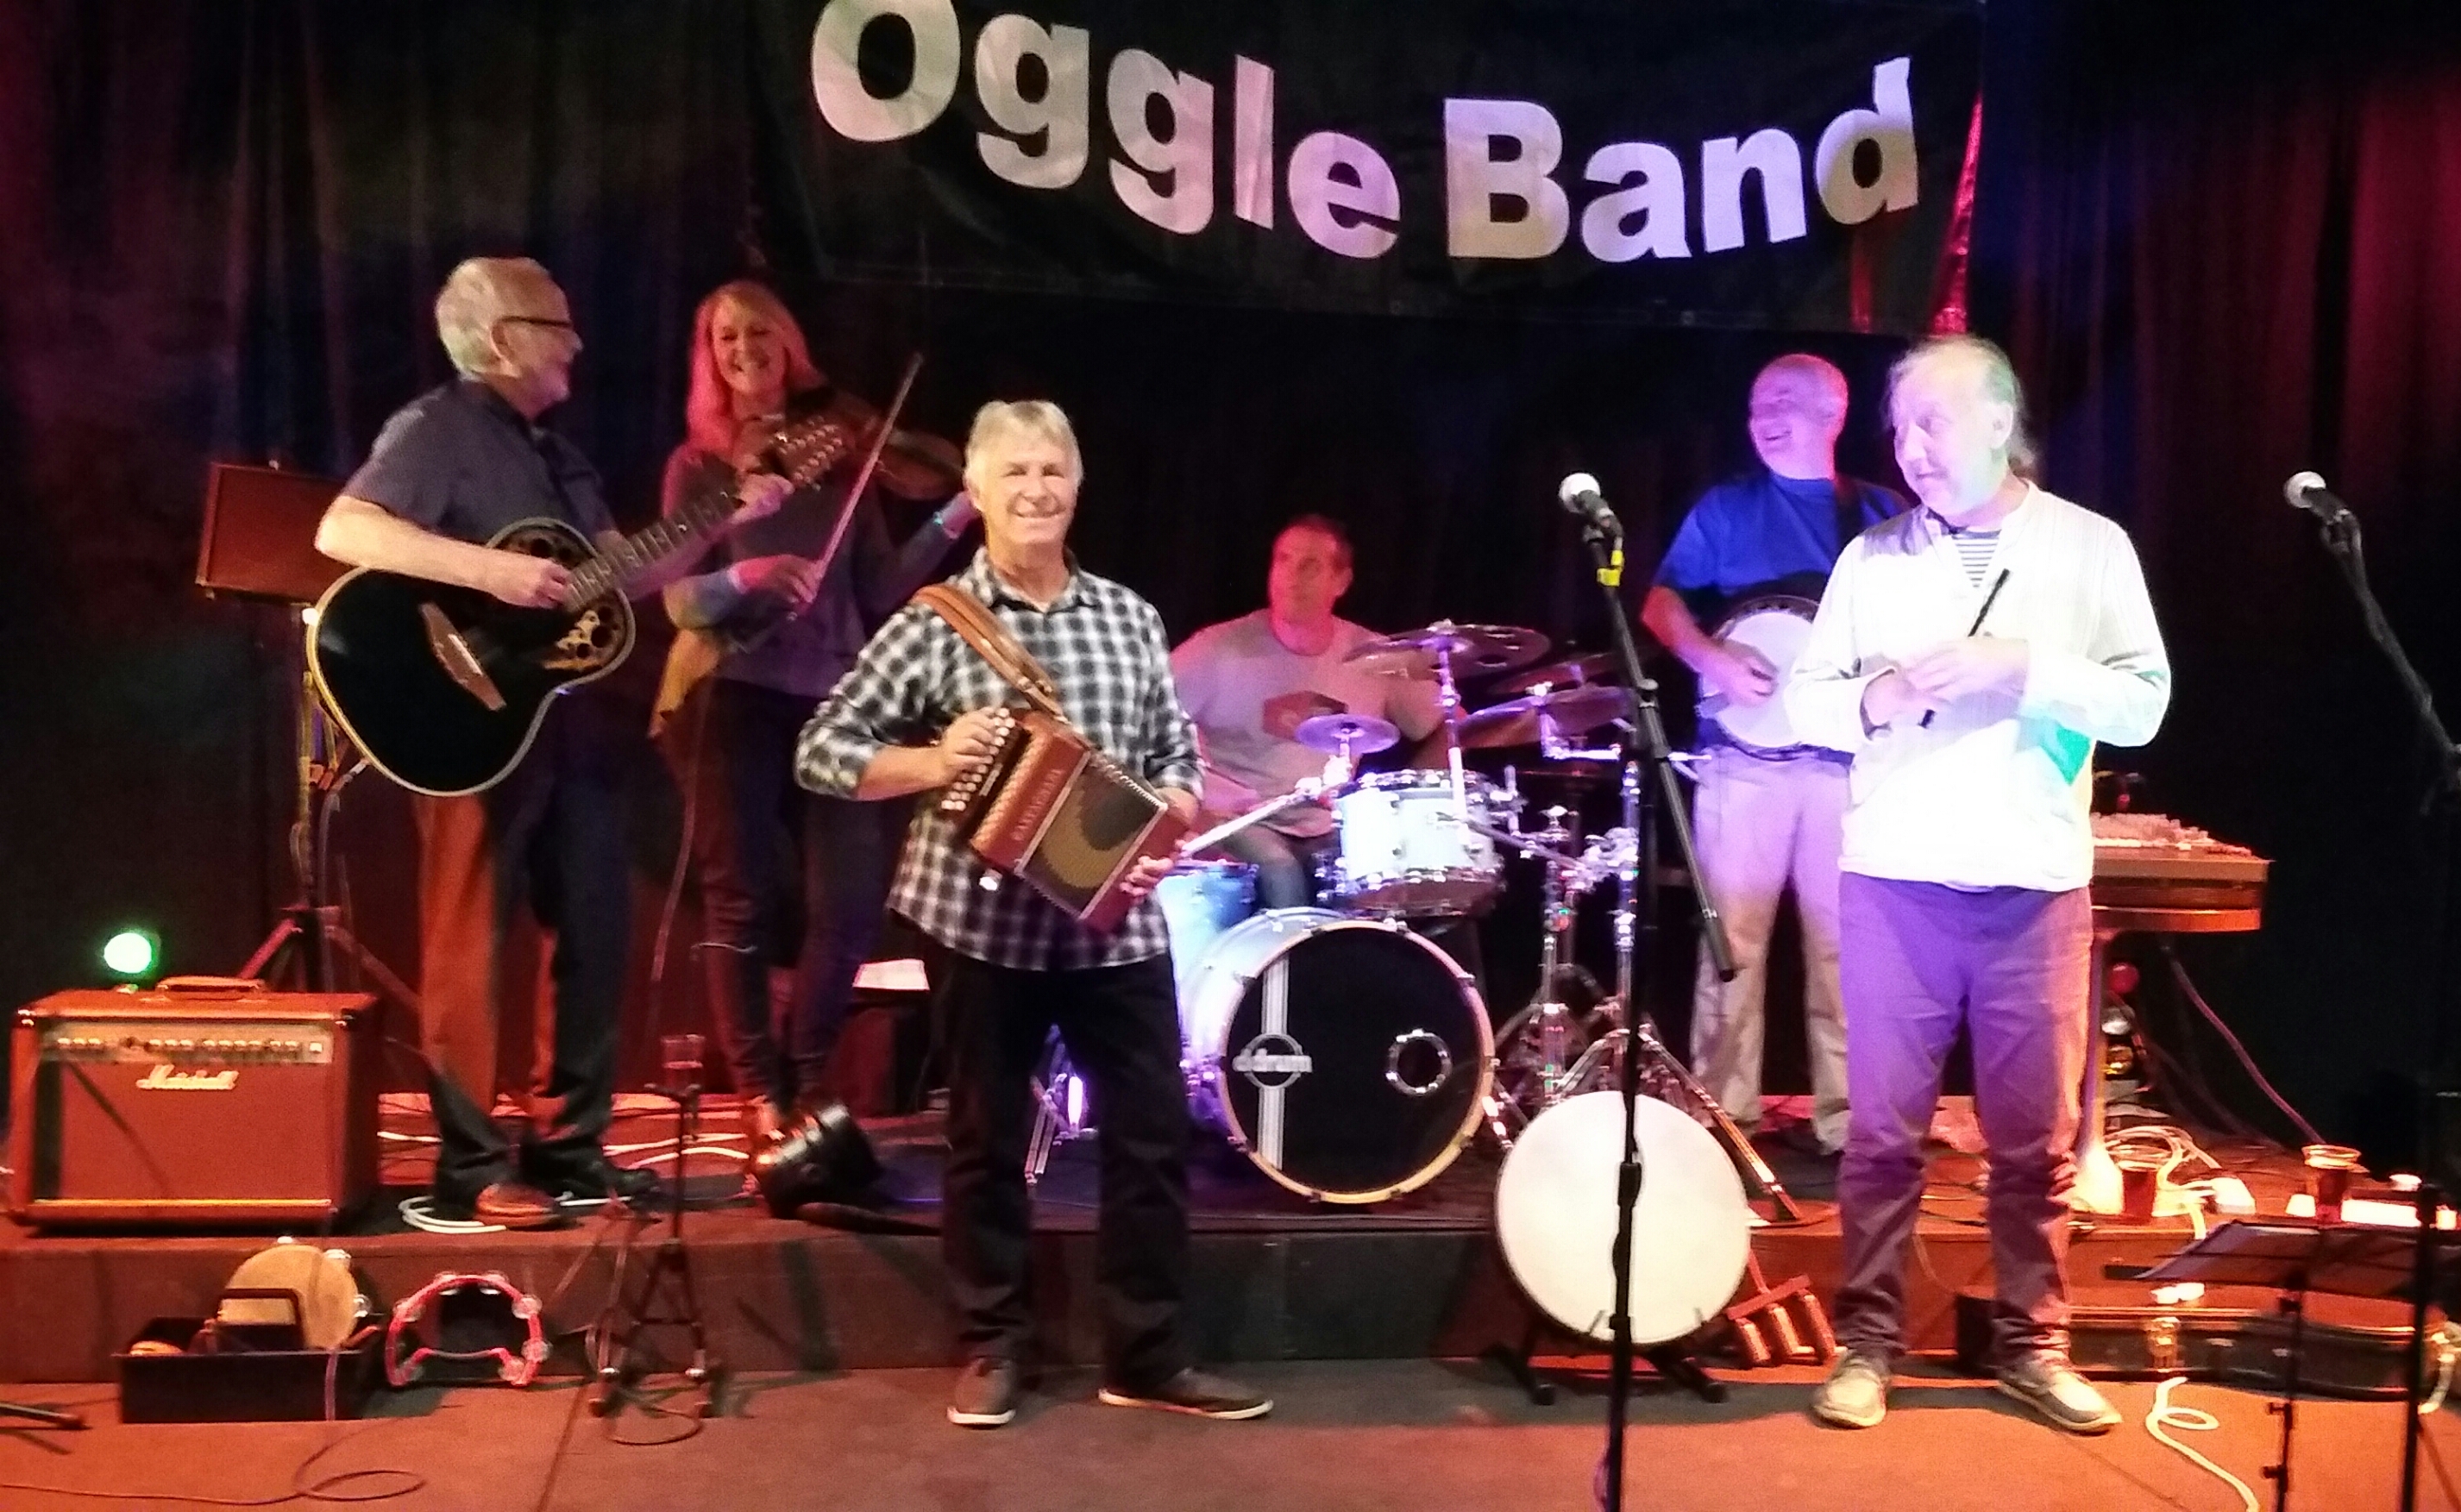 The Oggle Band